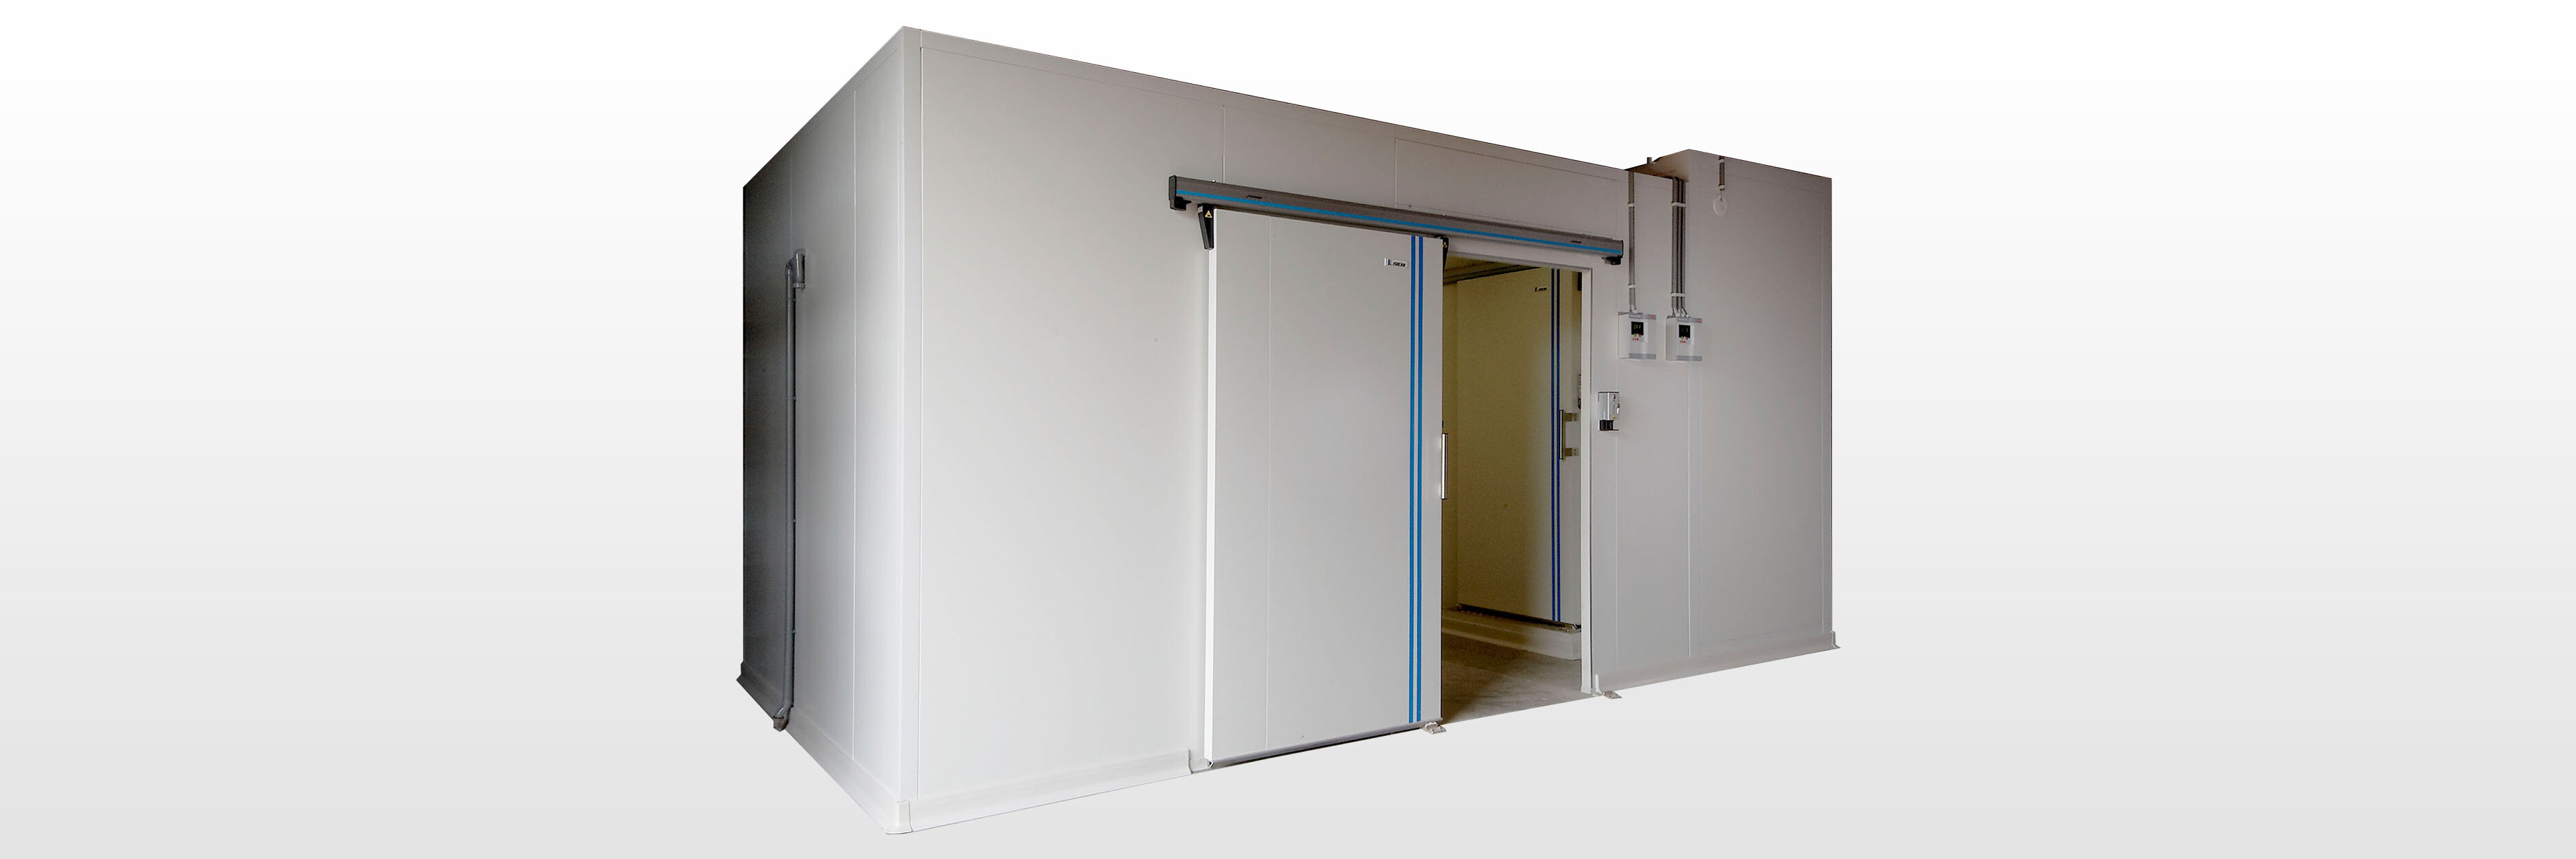 Joint de porte, universal réfrigérateur & congélateur industriel